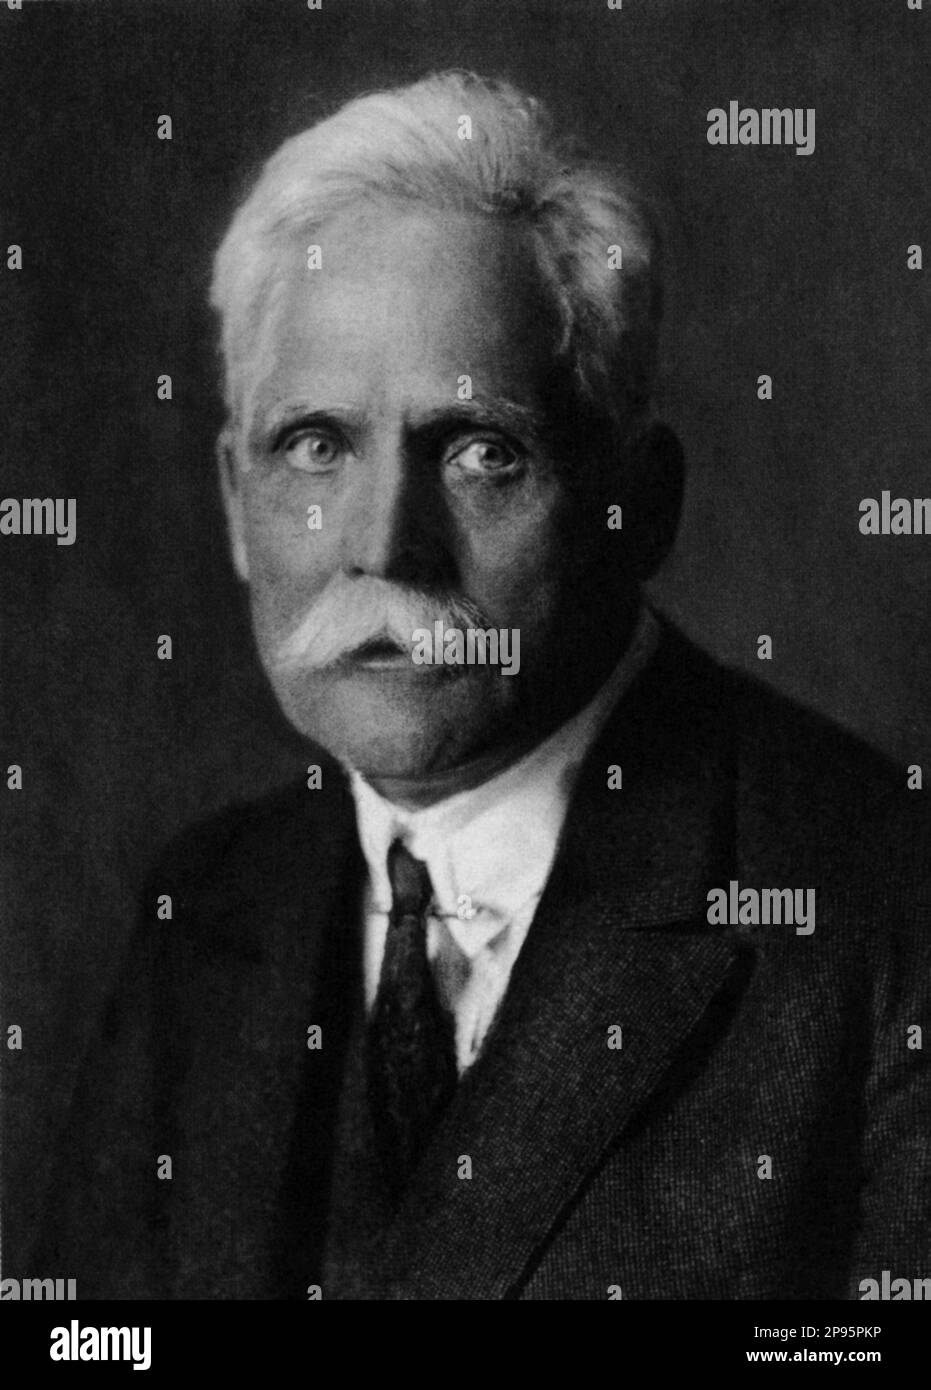 1928 c, DEUTSCHLAND : der deutsche Physiker WHILHELM WIEN ( 1864 - 1928 ). - foto storiche - foto storica - scienziato - Wissenschaftler - Portrait - Rituto - Physik - FISICA - FISICO - SCIENZA - WISSENSCHAFT - Baffi - Schnurrbart - Cravatta - Krawatte --- Archivio GBB Argenzia Stockfoto